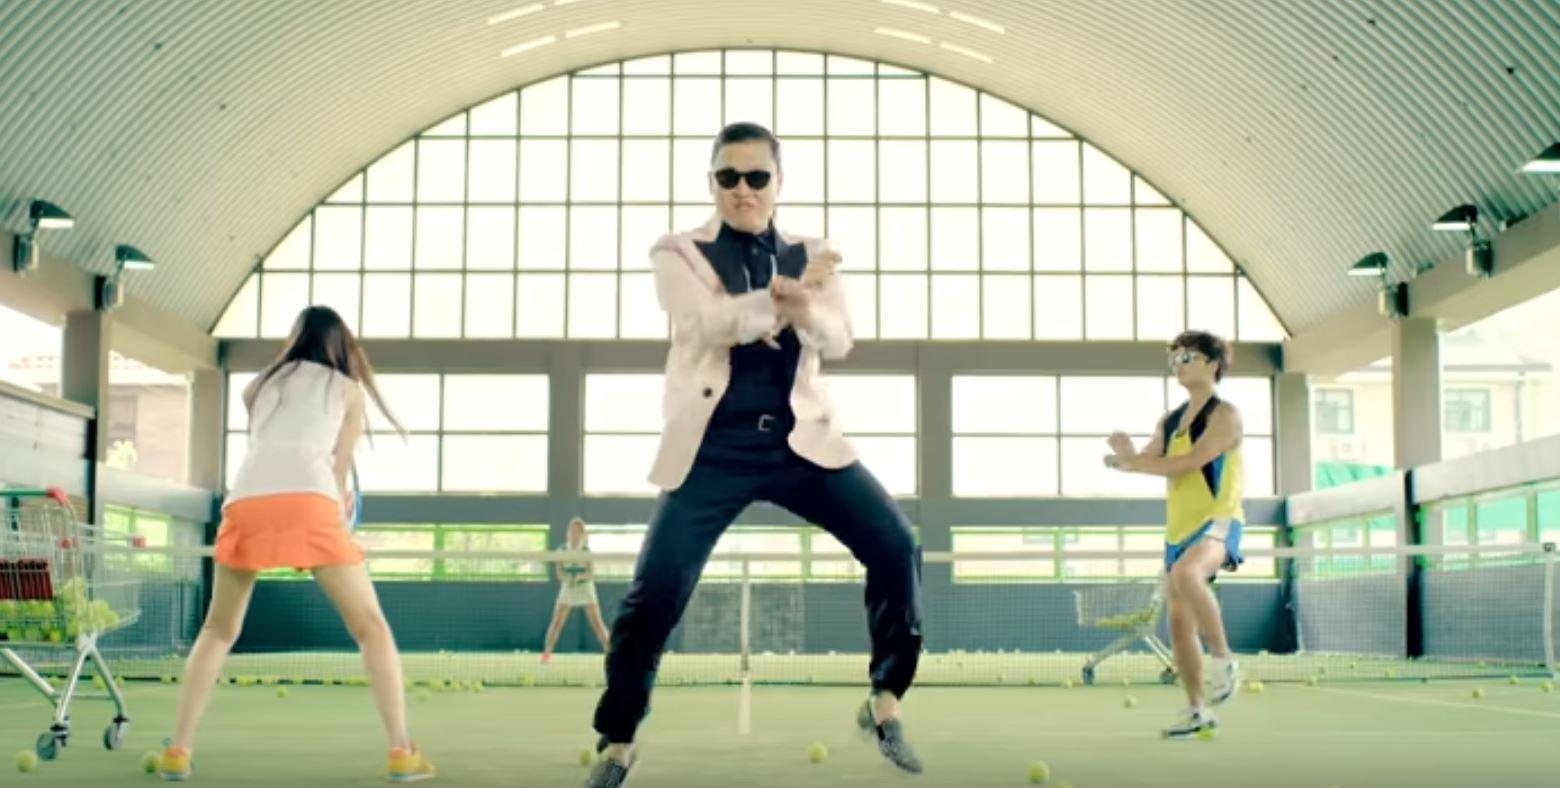 10 años después del "Gangnam Style": qué ha pasado en la vida de su creador, Psy